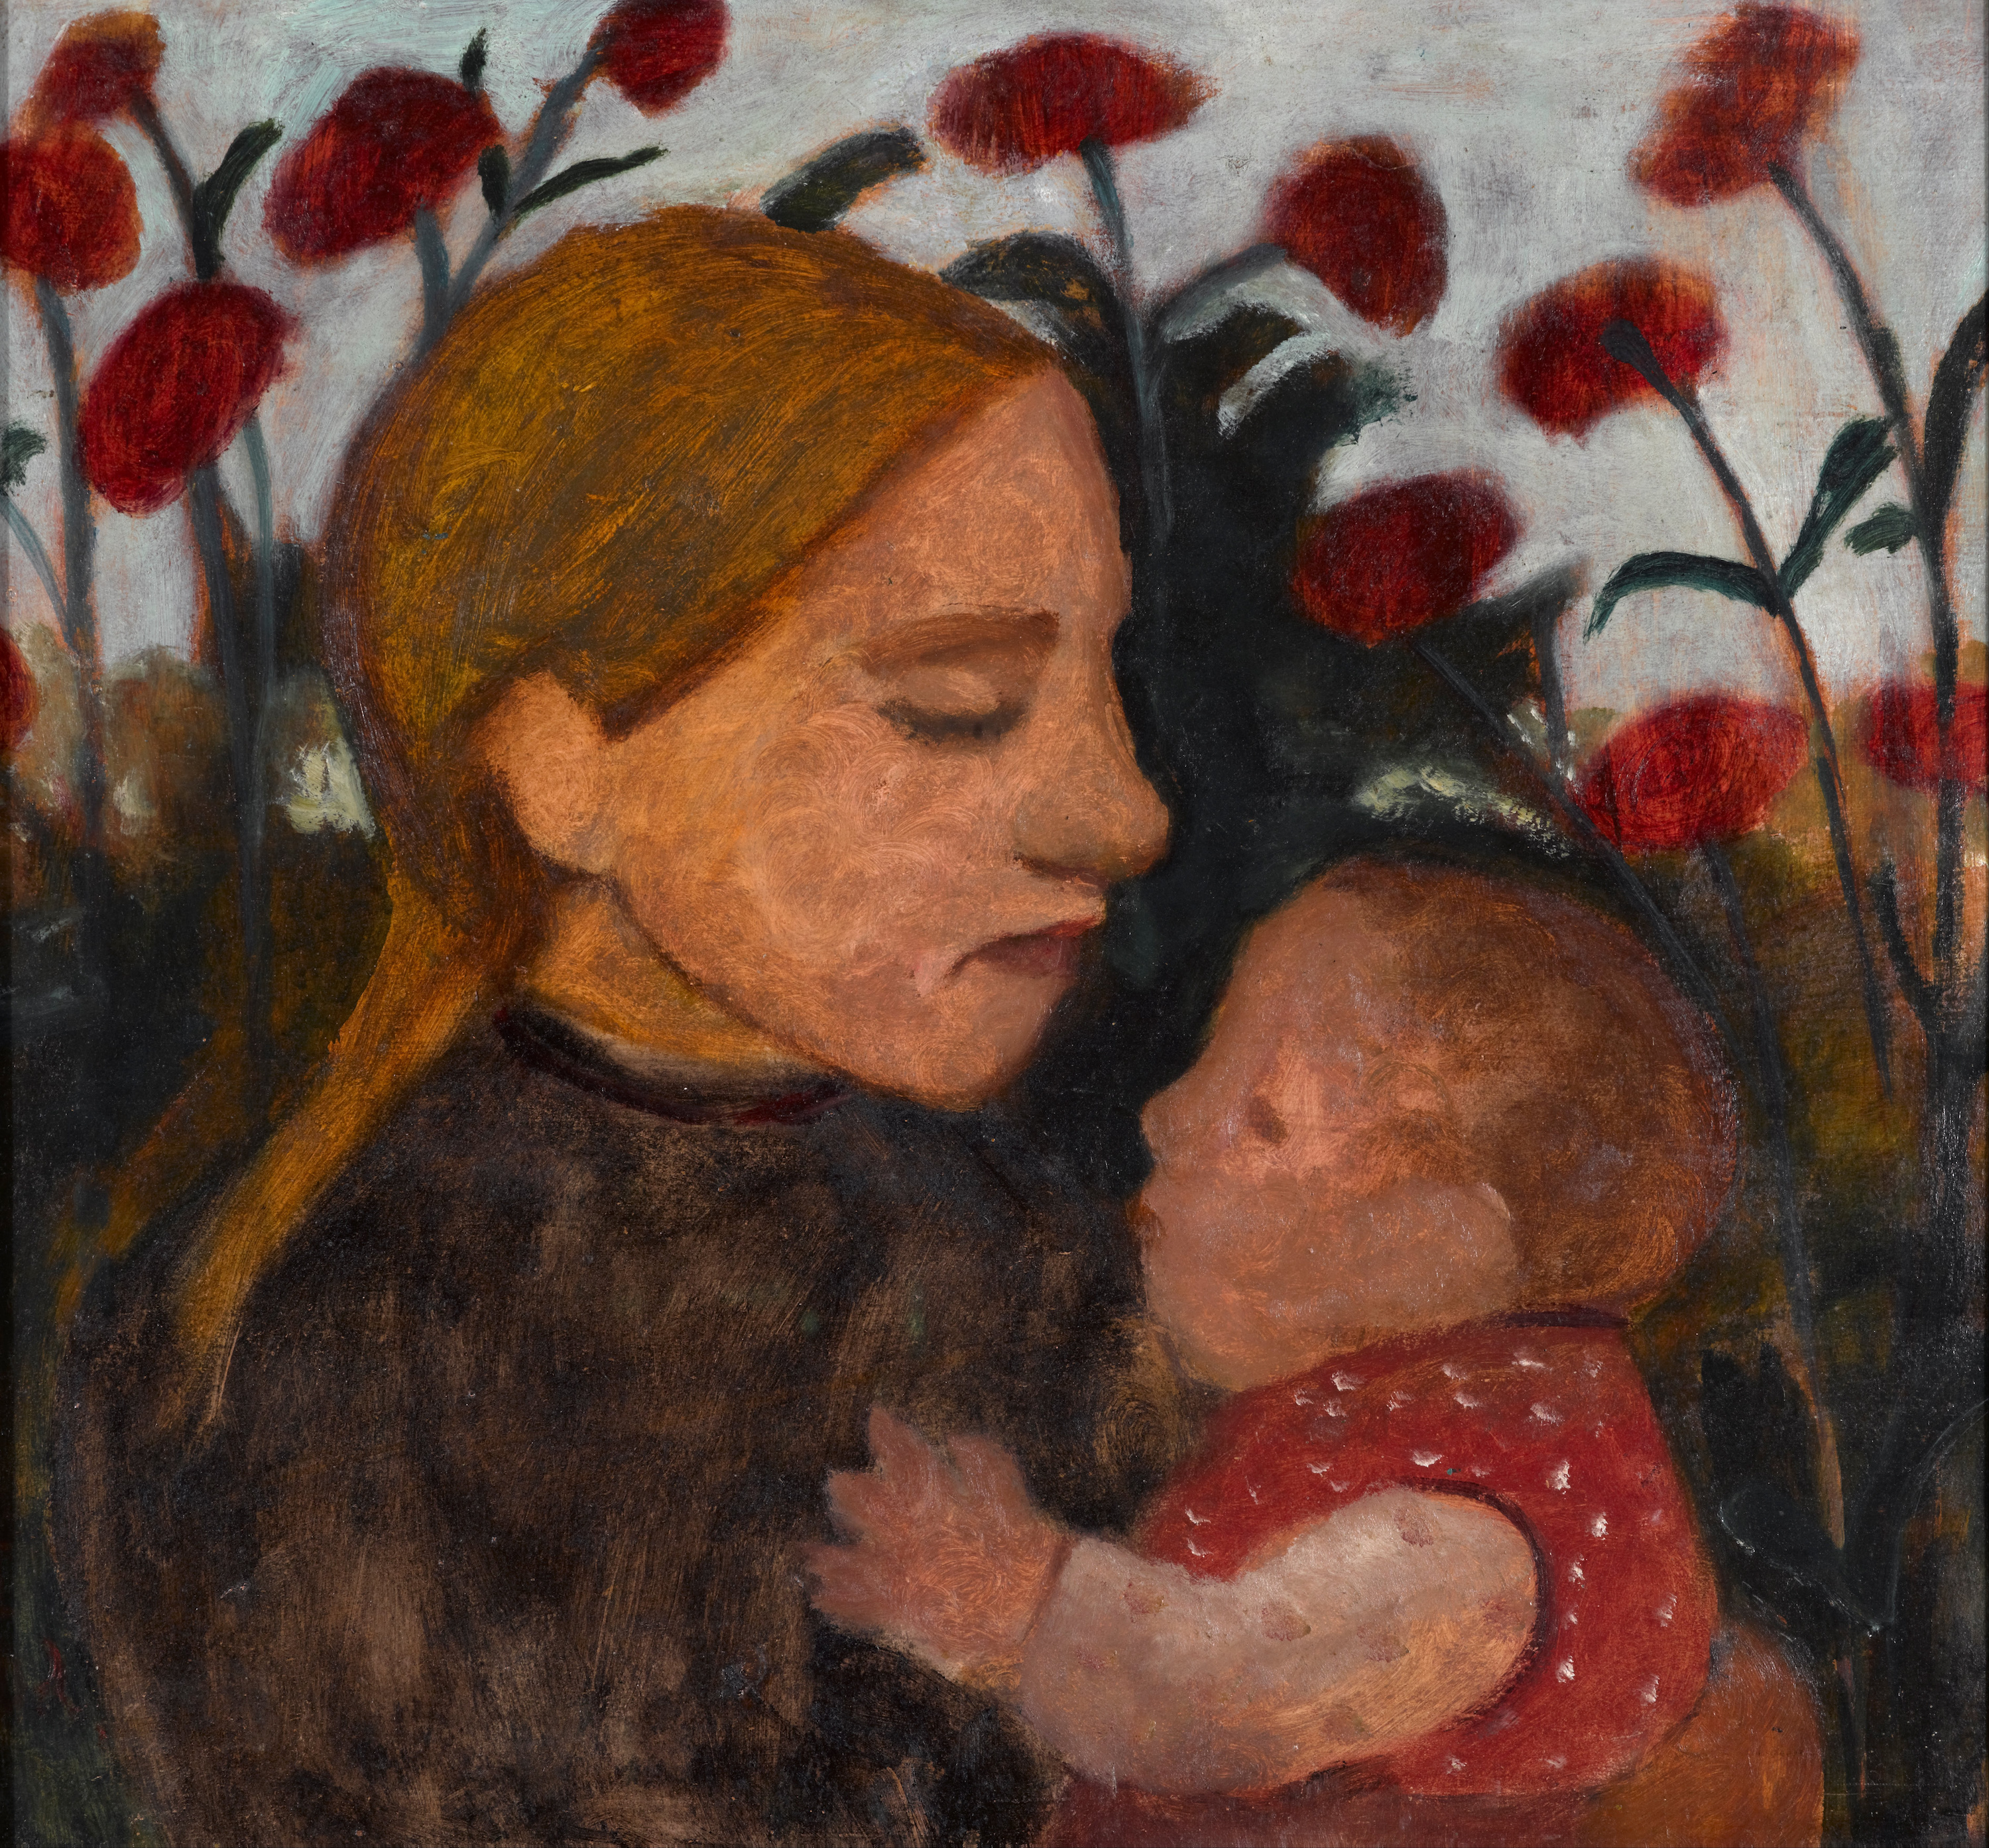 Girl with Child by Paula Modersohn-Becker - 1902 - 71 x 66.3 cm Kunstmuseum Den Haag